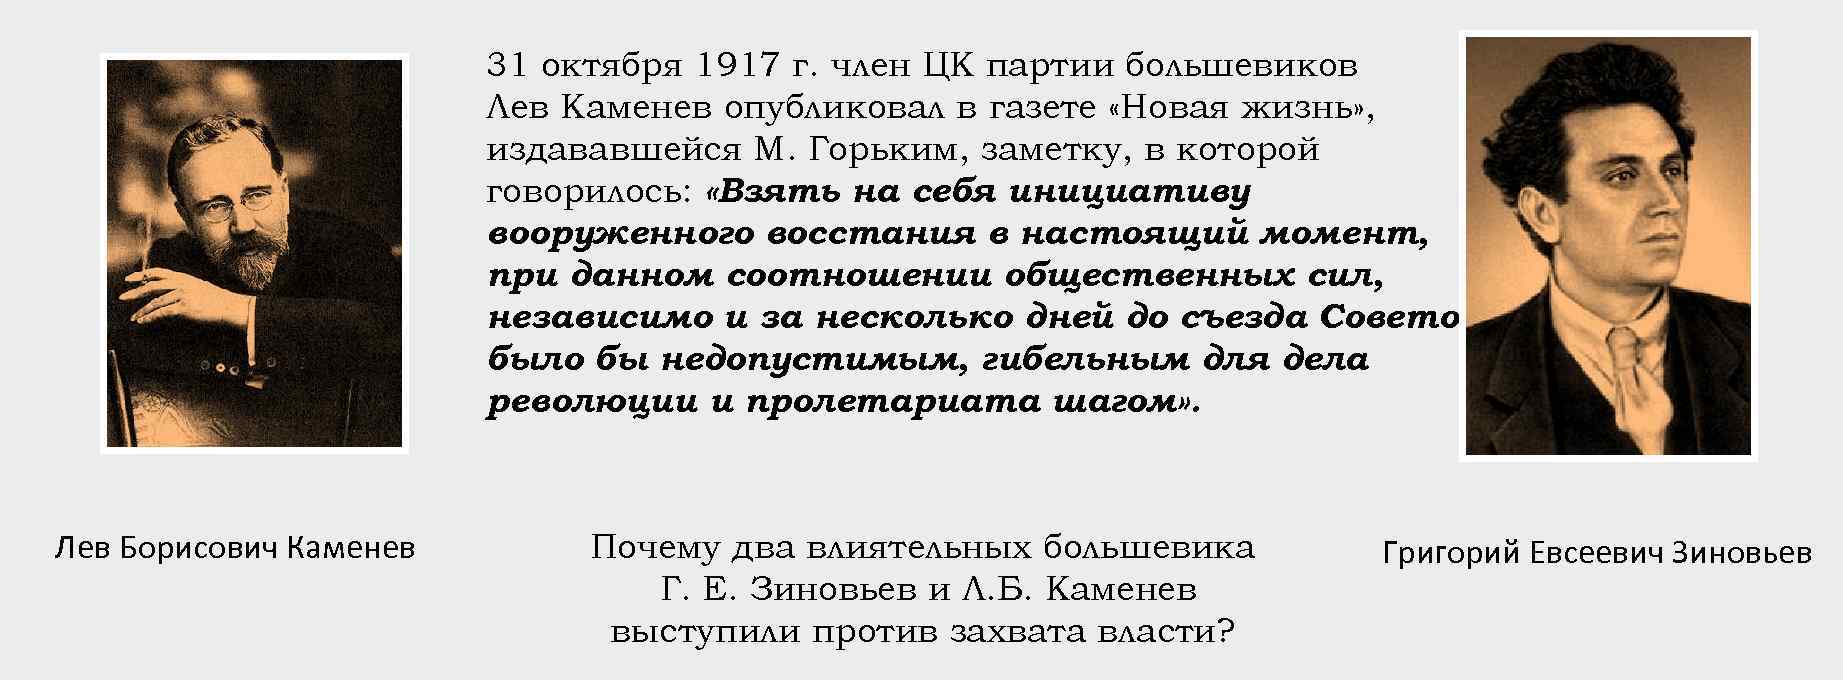 Против вооруженного восстания выступили. Каменев и Зиновьев в 1917. Лев Каменев в 1917 году. Каменев и Зиновьев против вооруженного Восстания.